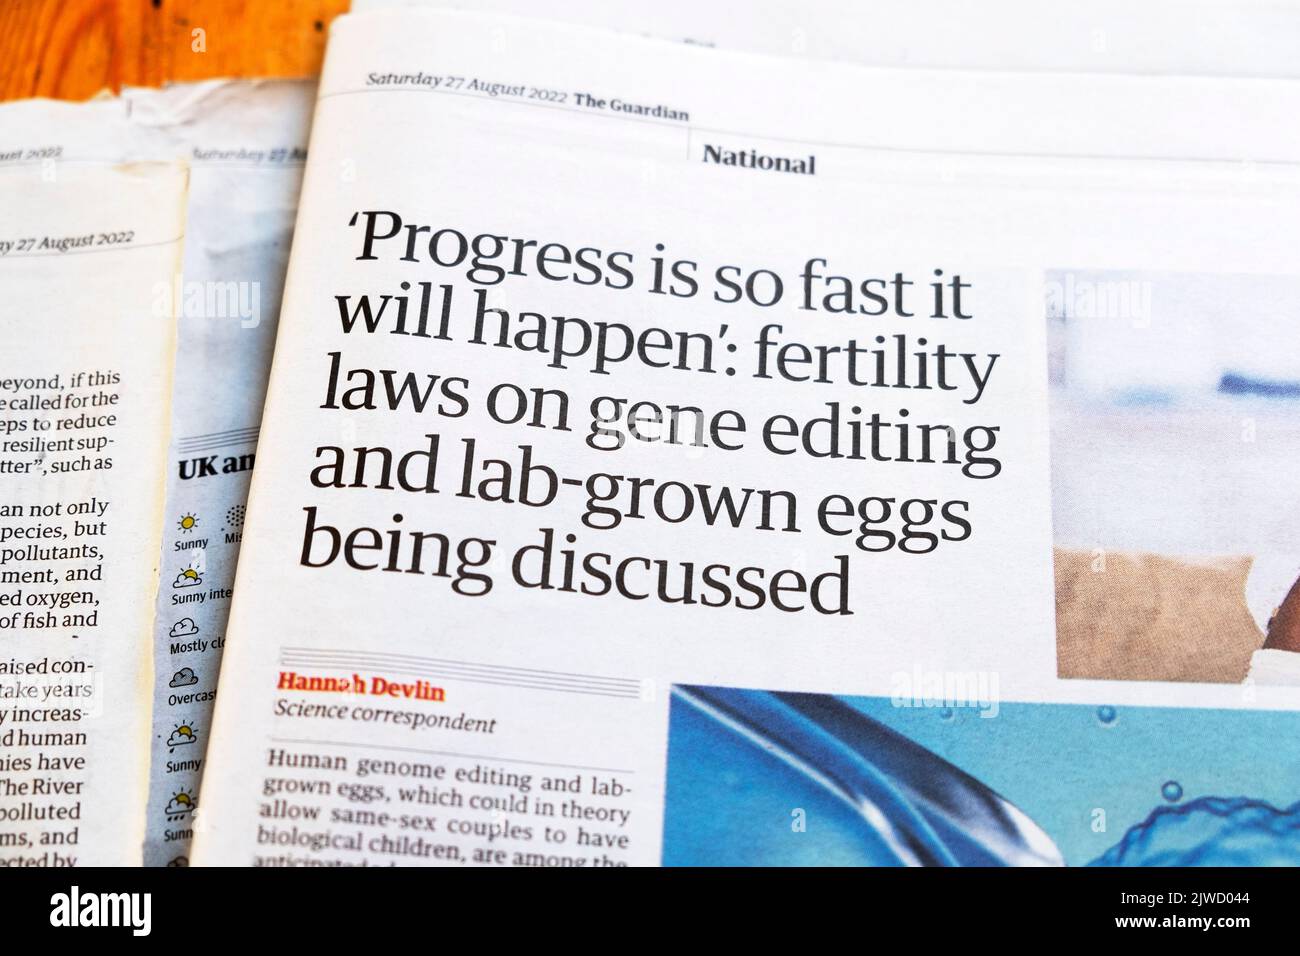 "Les progrès sont si rapides qu'ils se produiront: Lois sur la fertilité sur l'édition de gènes et les œufs cultivés en laboratoire" Guardian article en tête 27 août 2022 Londres Royaume-Uni Banque D'Images